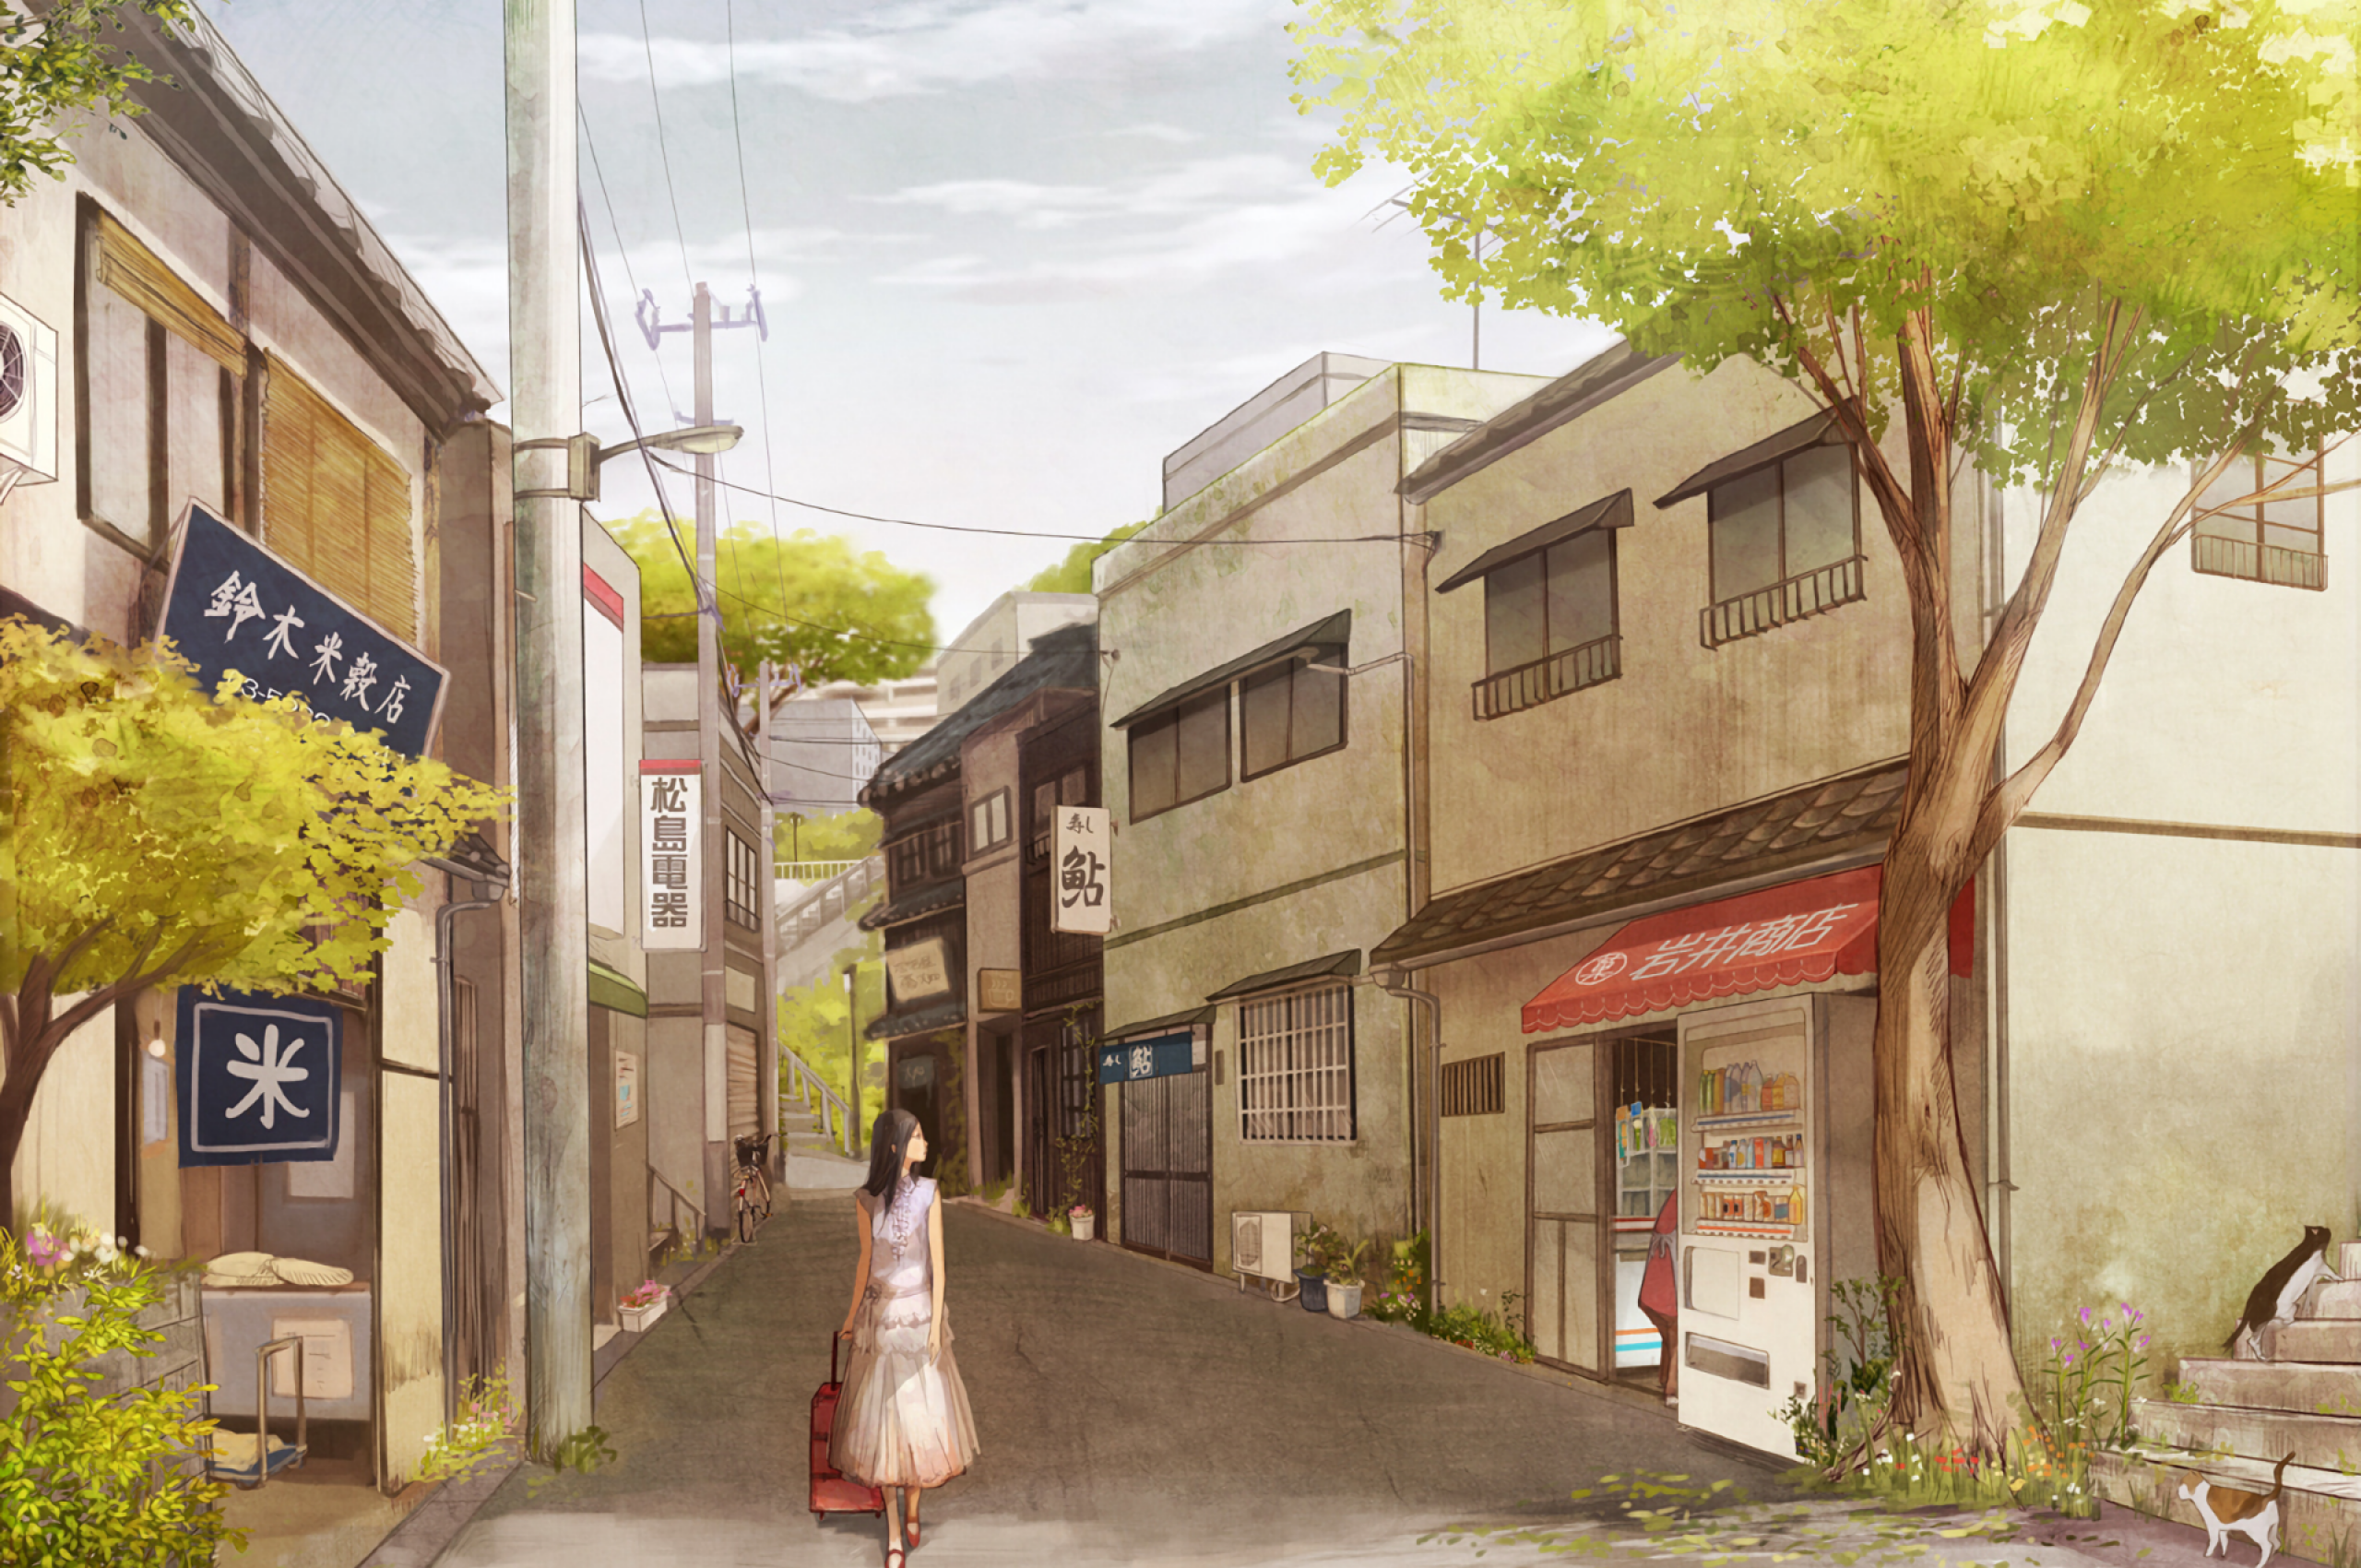 Download 2560x1700 Anime Landscape, City, Buildings, Calming